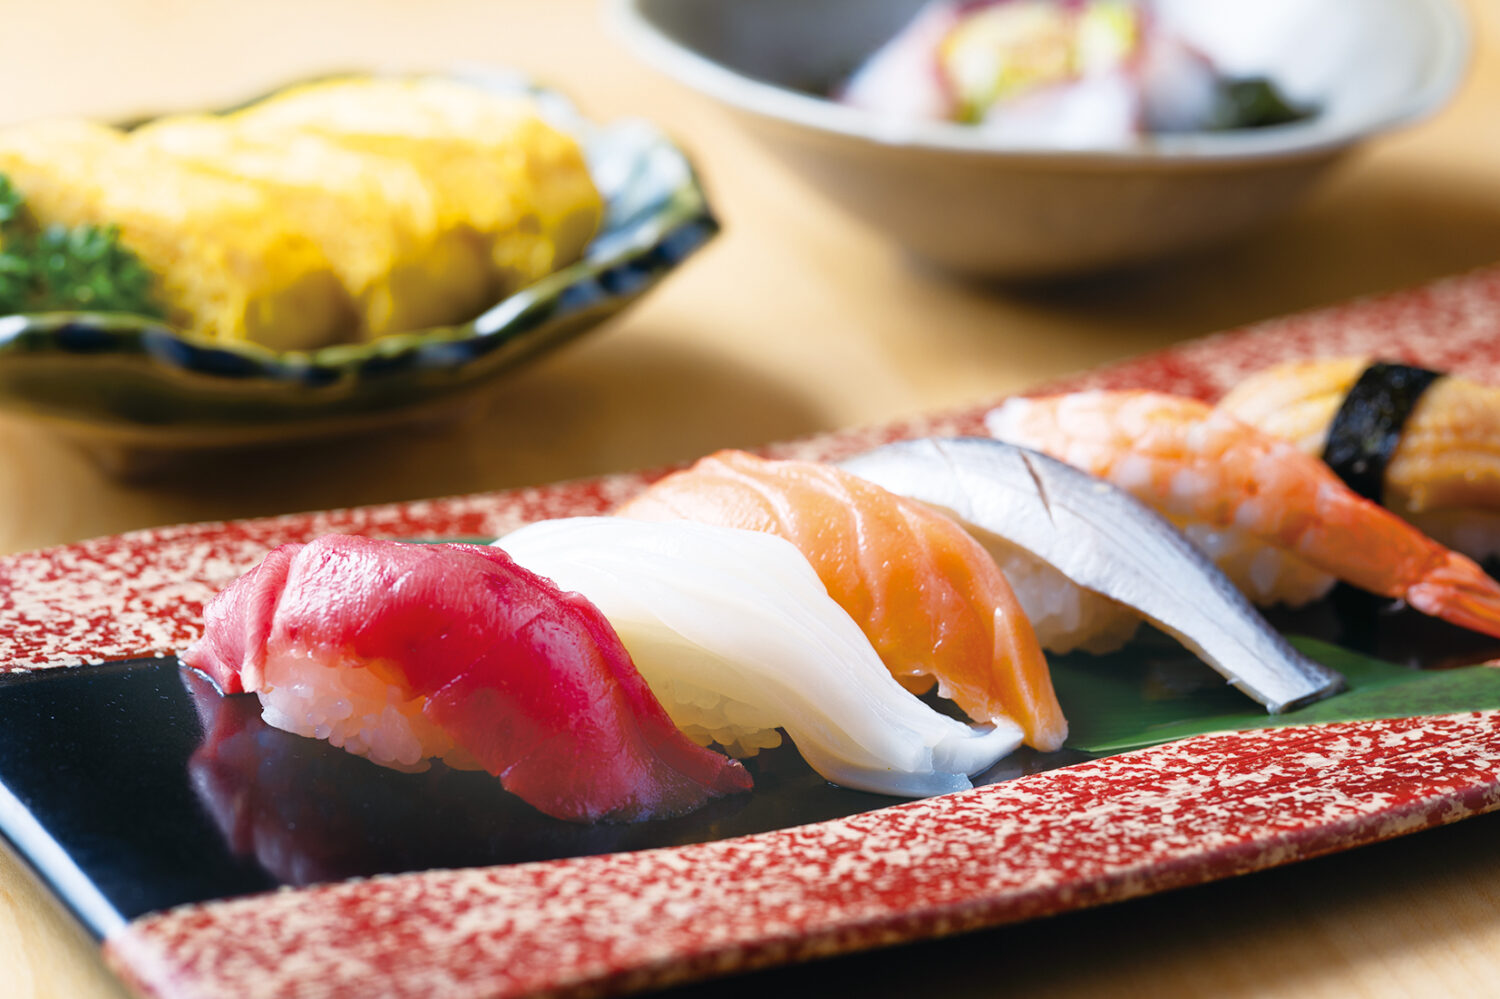 「すし処 海」の握りセット。世界のどこにいても本格的な寿司をいただける